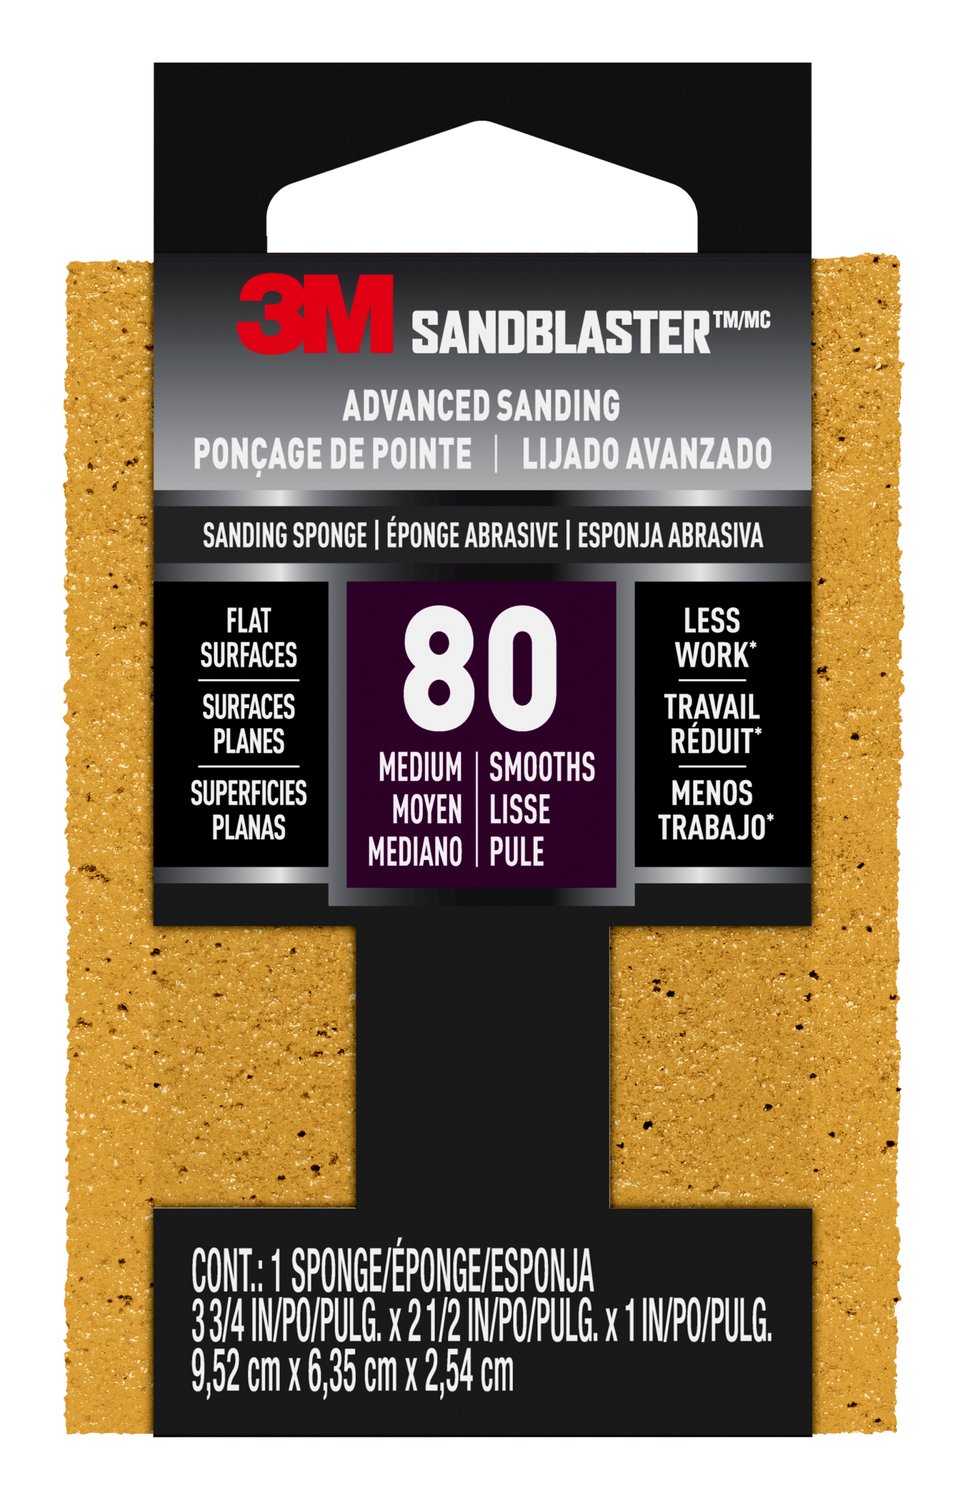 7100268024 - 3M SandBlaster Advanced Sanding Sanding Sponge 20908-80, 80 grit, 3 3/4 in x 2 1/2 x 1 in, 1/pk